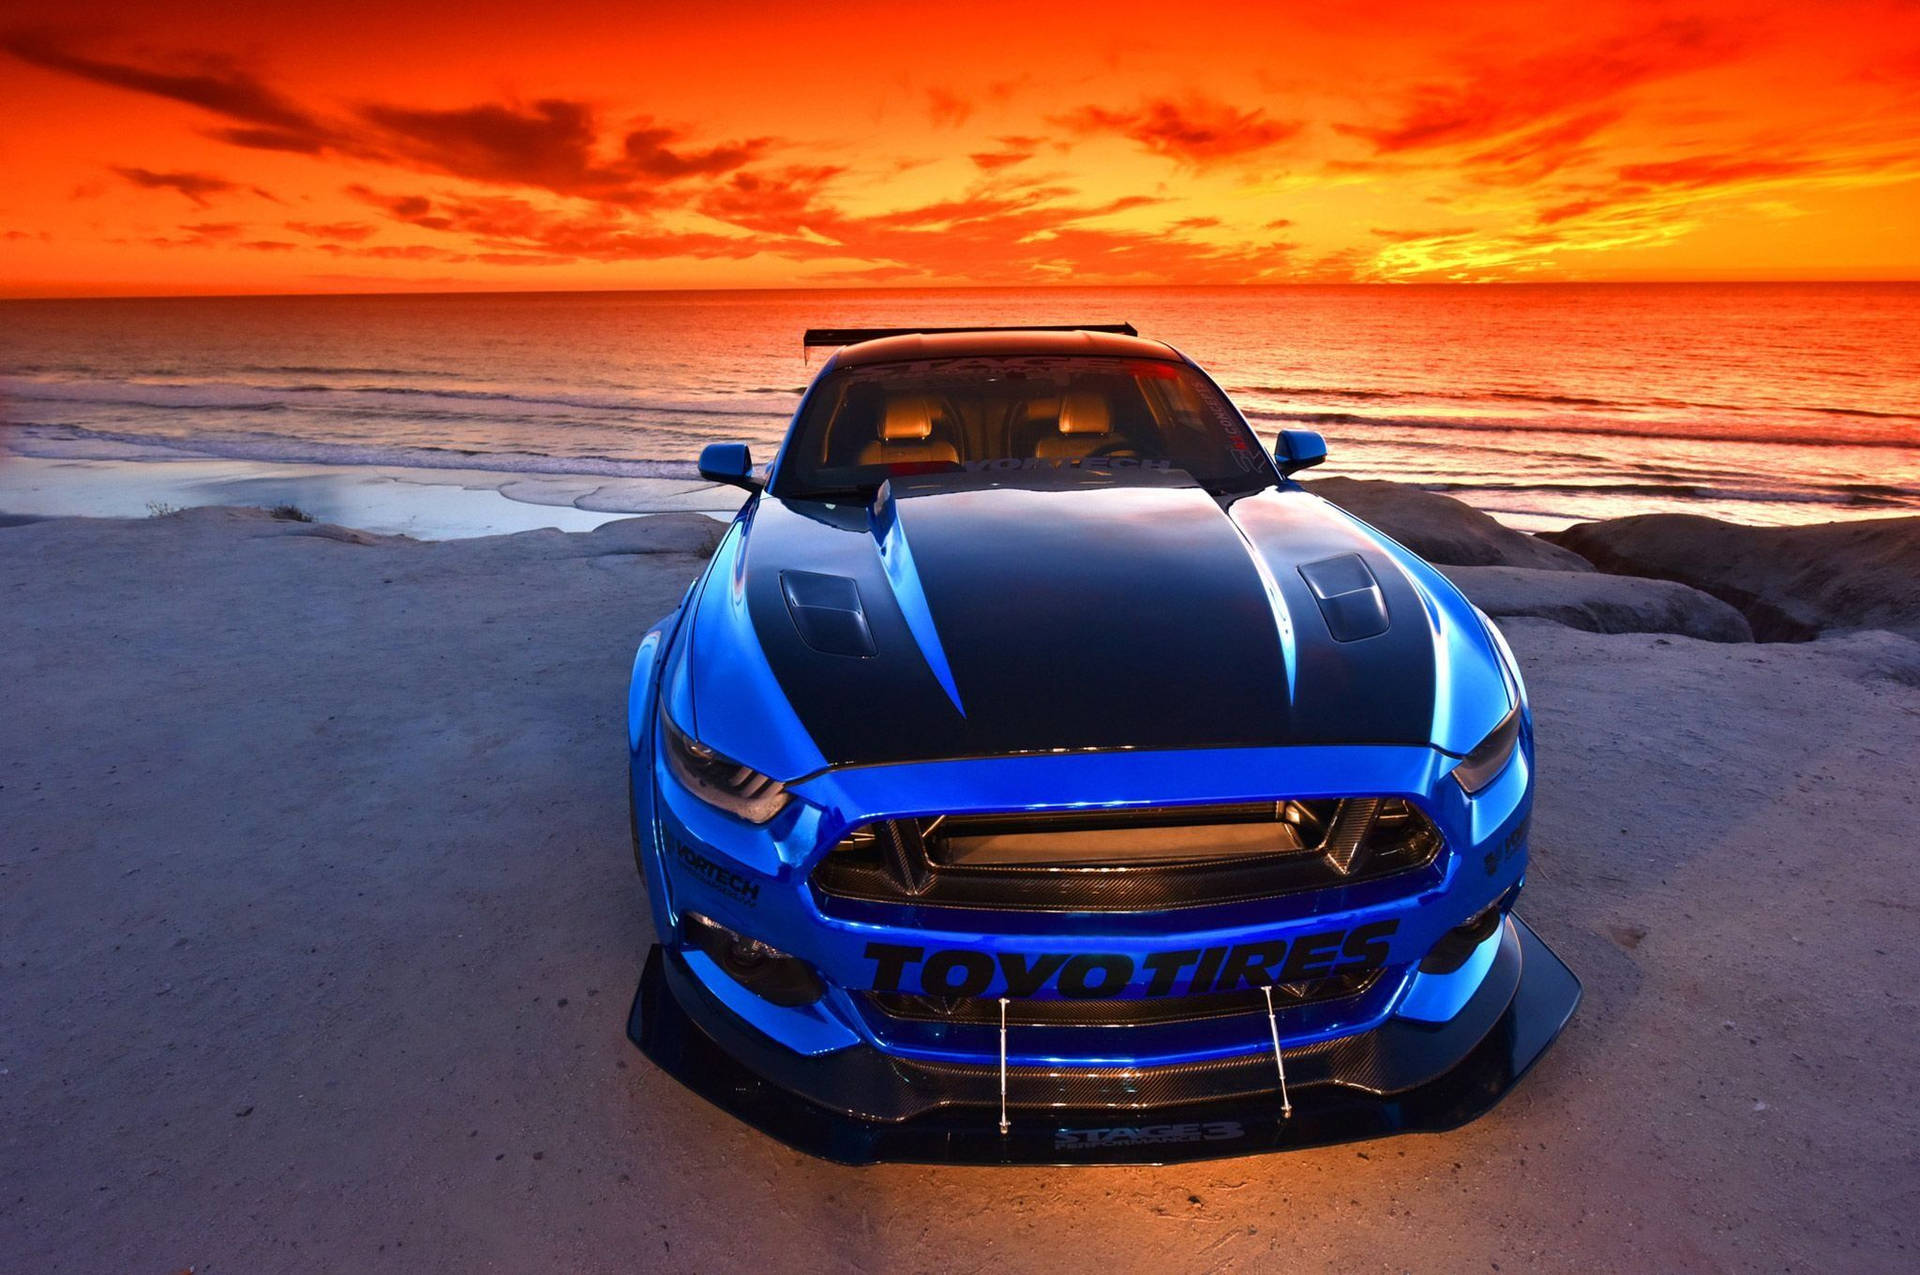 Mustang On Sunset Beach Wallpaper